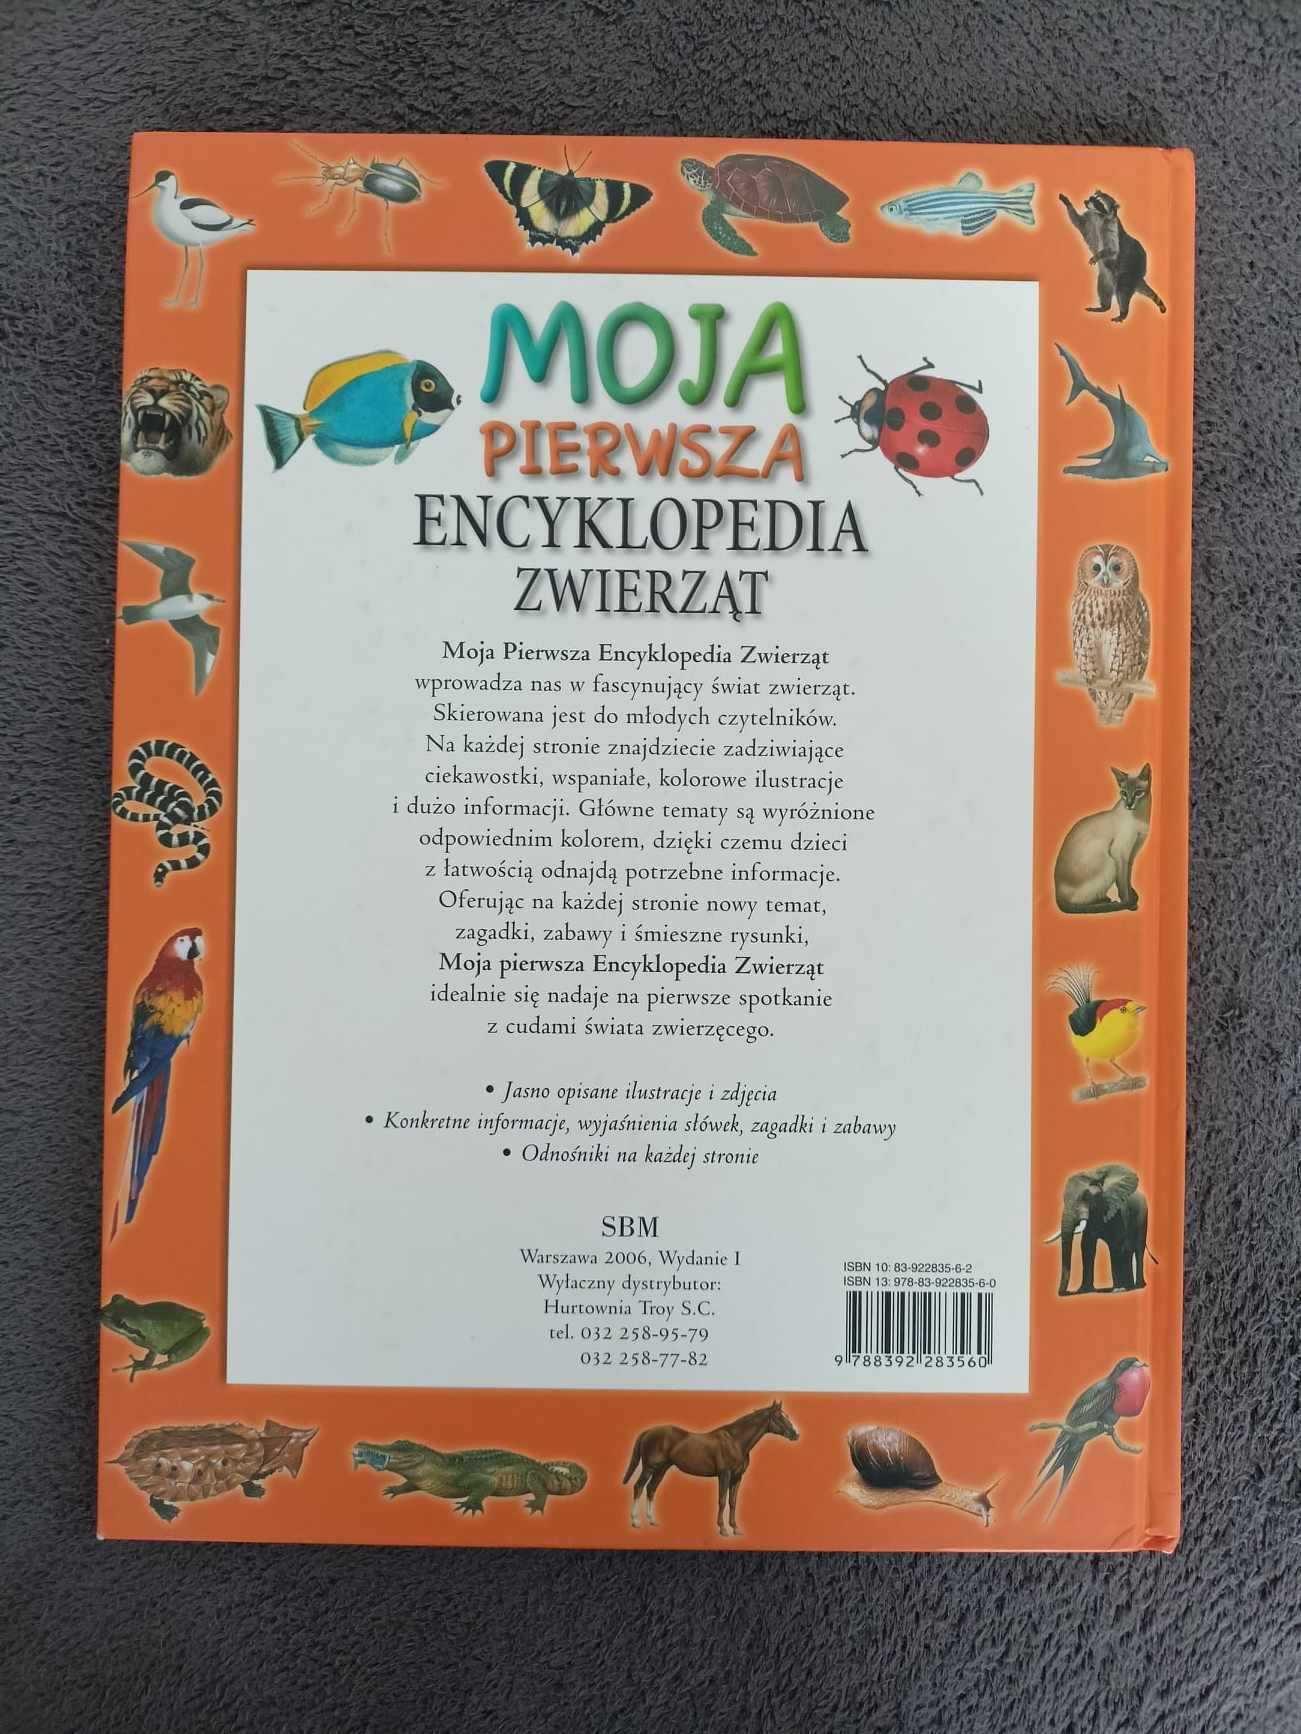 Książka "Moja pierwsza encyklopedia zwierząt" wydawnictwo SBM